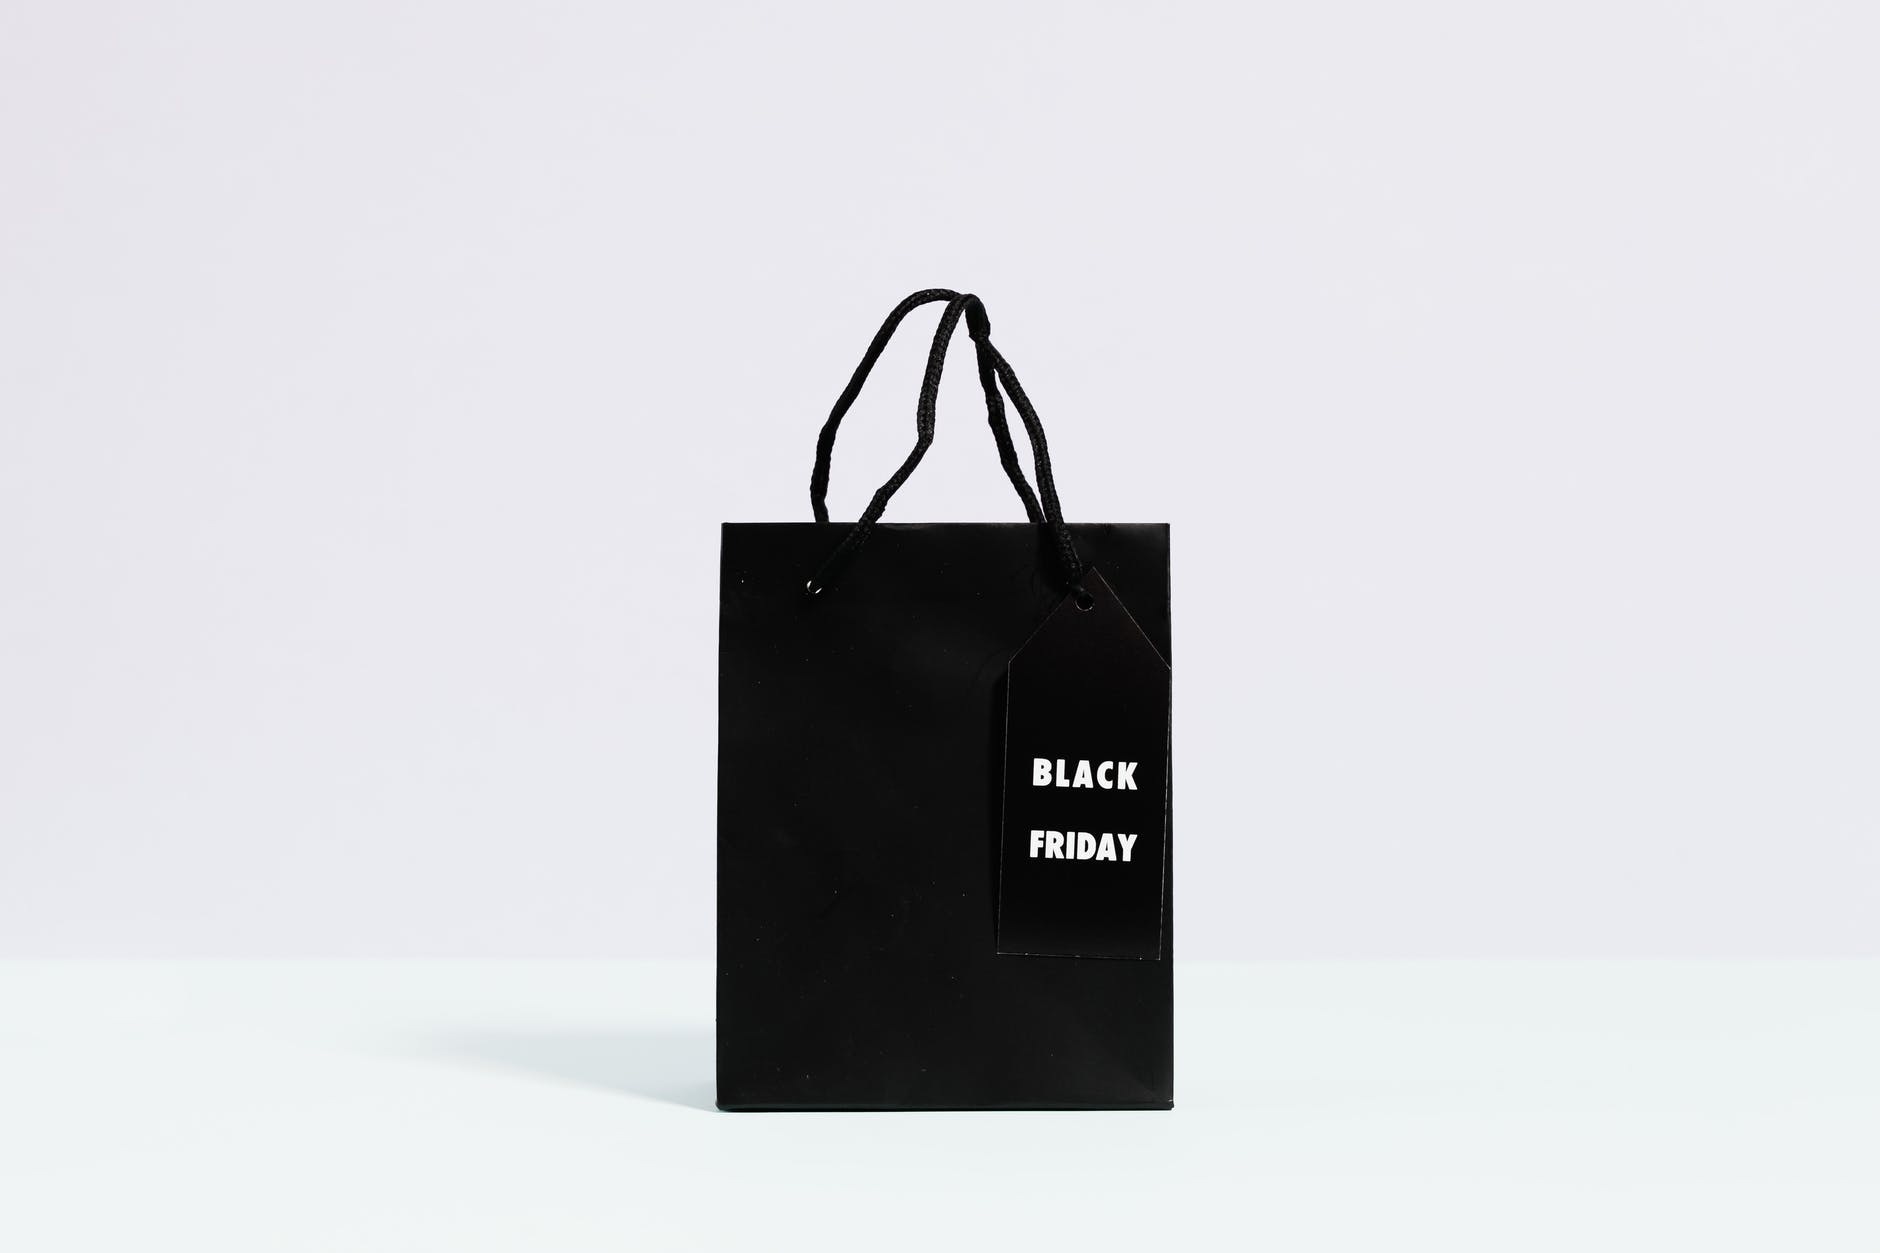 Seberapa Efektif Strategi Branding dengan Tas Promosi Black Friday?